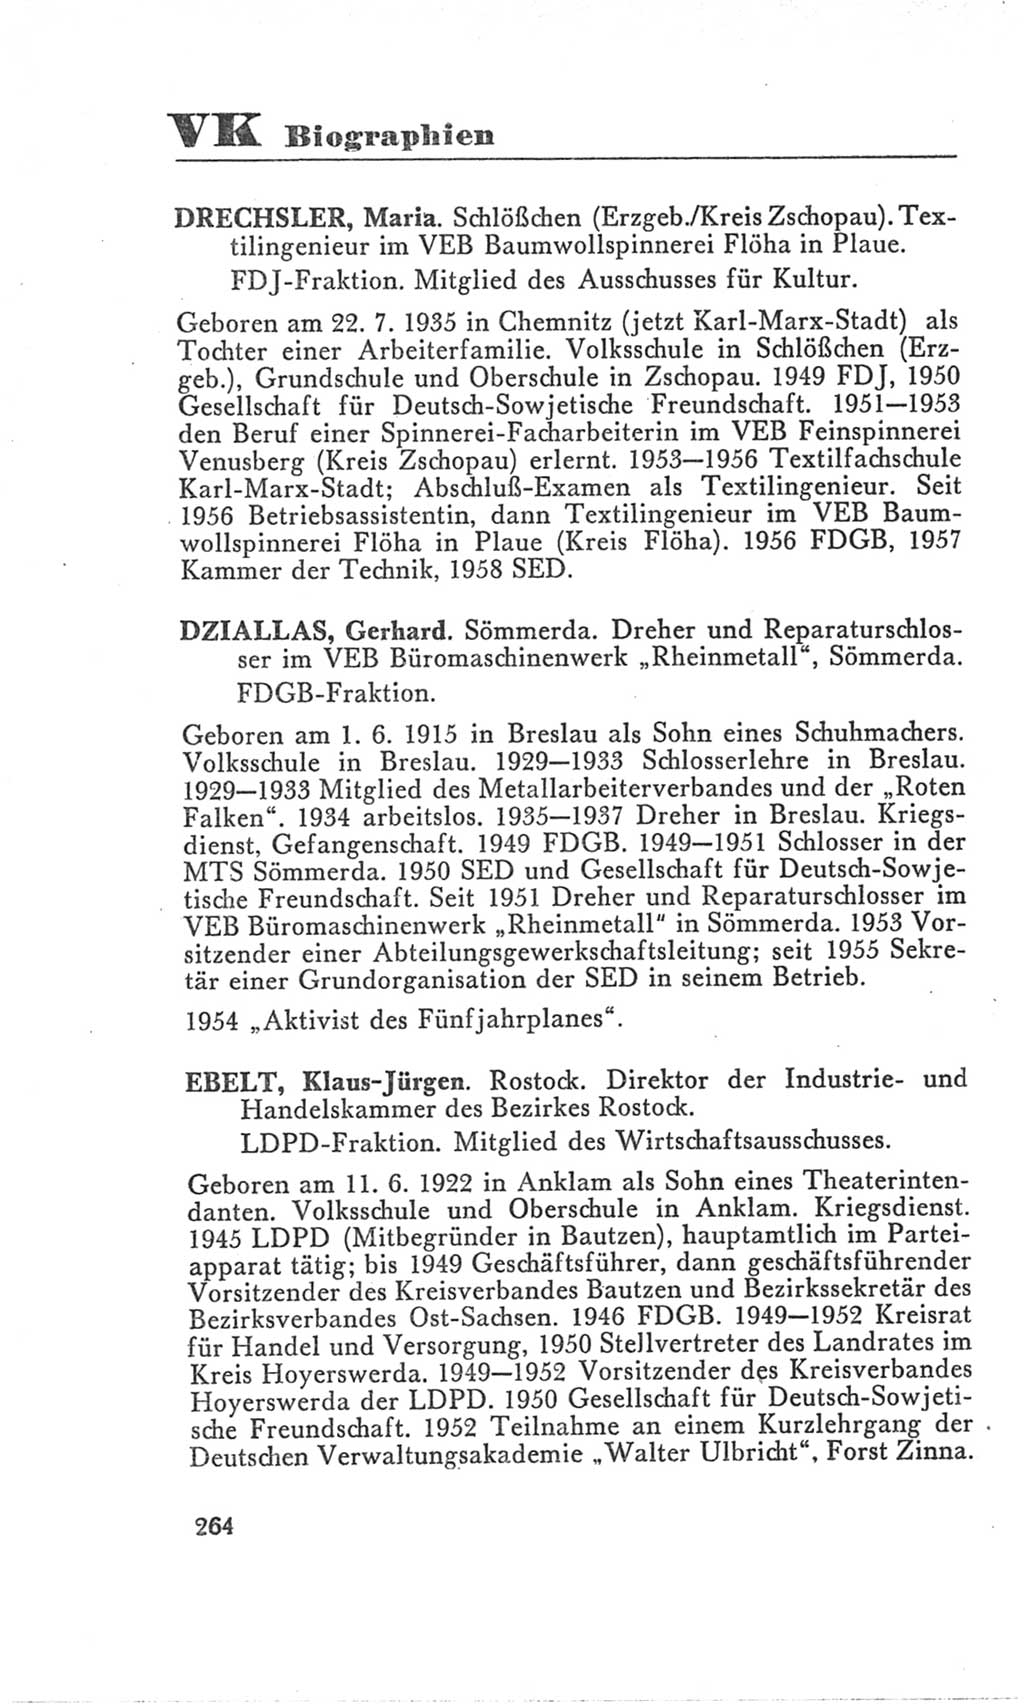 Handbuch der Volkskammer (VK) der Deutschen Demokratischen Republik (DDR), 3. Wahlperiode 1958-1963, Seite 264 (Hdb. VK. DDR 3. WP. 1958-1963, S. 264)